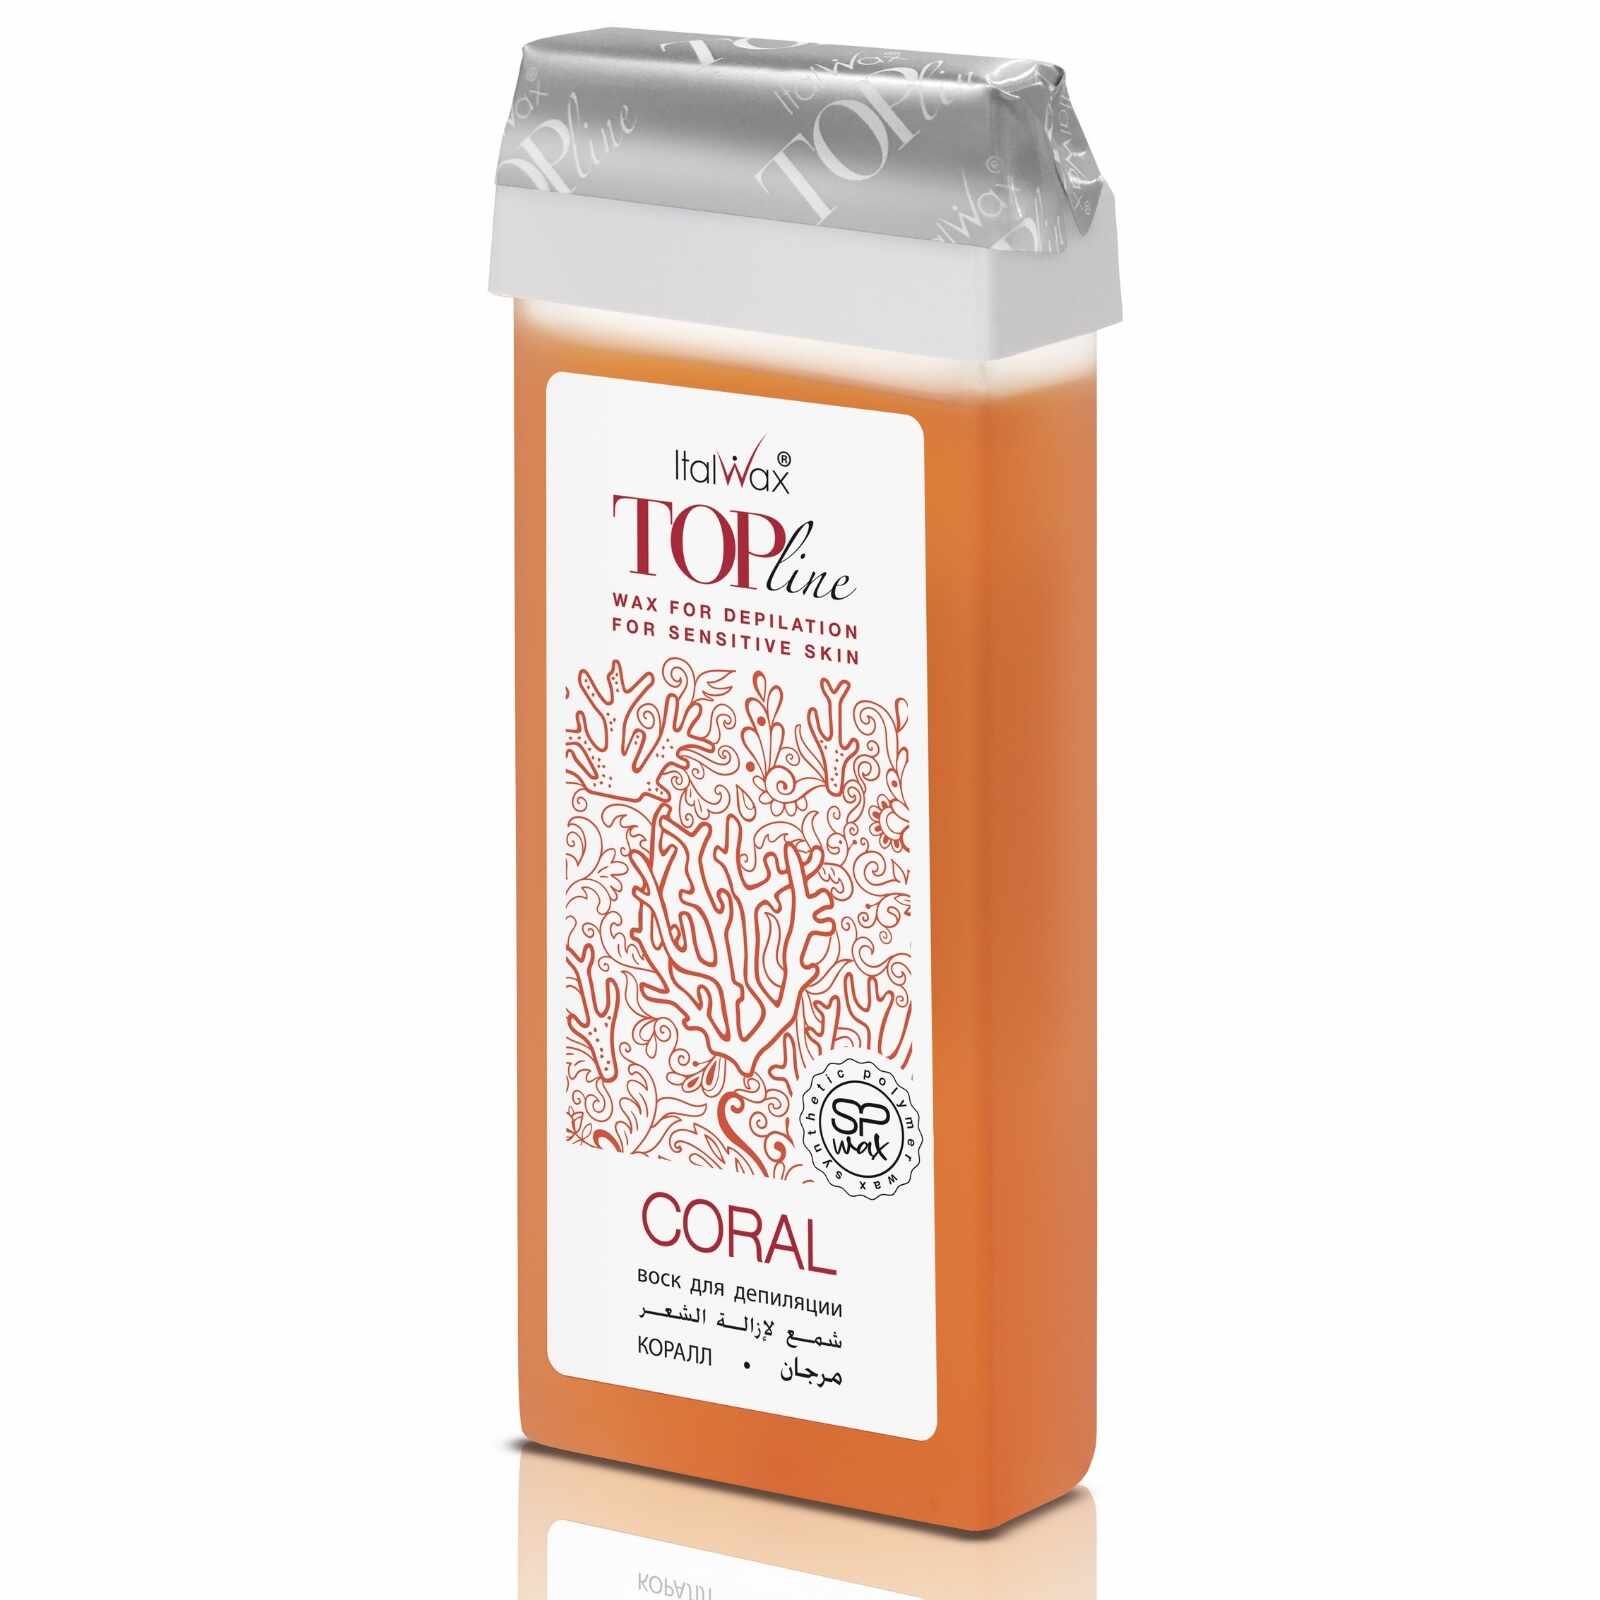 Ceara Epilat Cartus Top Line Coral ItalWax 100 ml